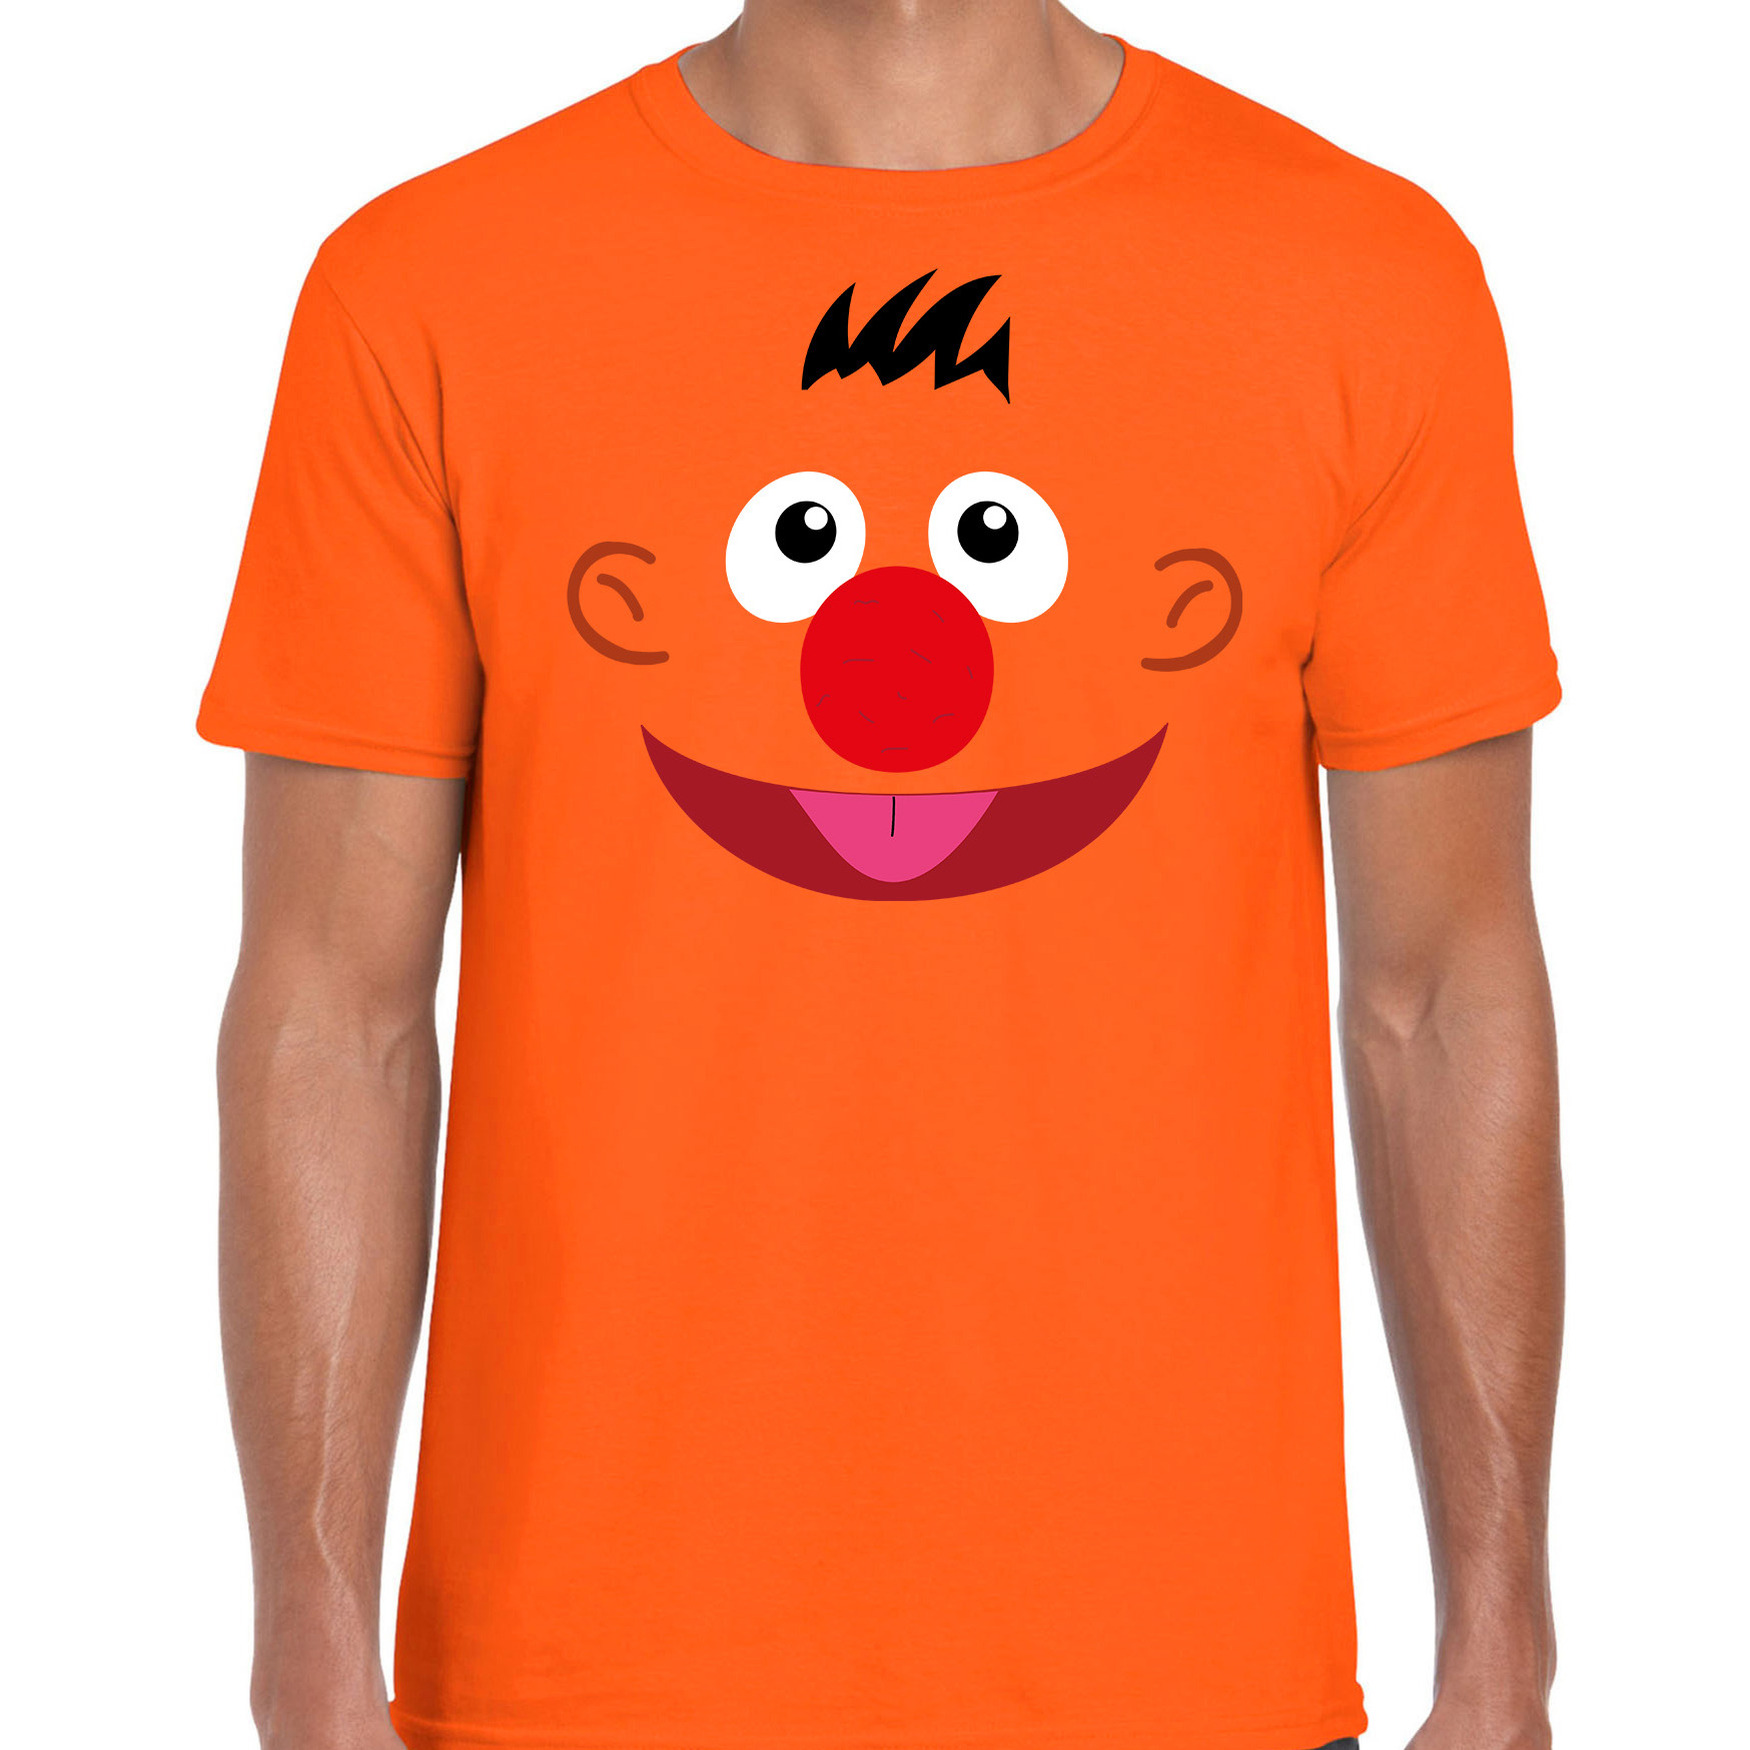 Verkleed-carnaval t-shirt oranje cartoon knuffel pop voor heren Verkleed-kostuum shirts